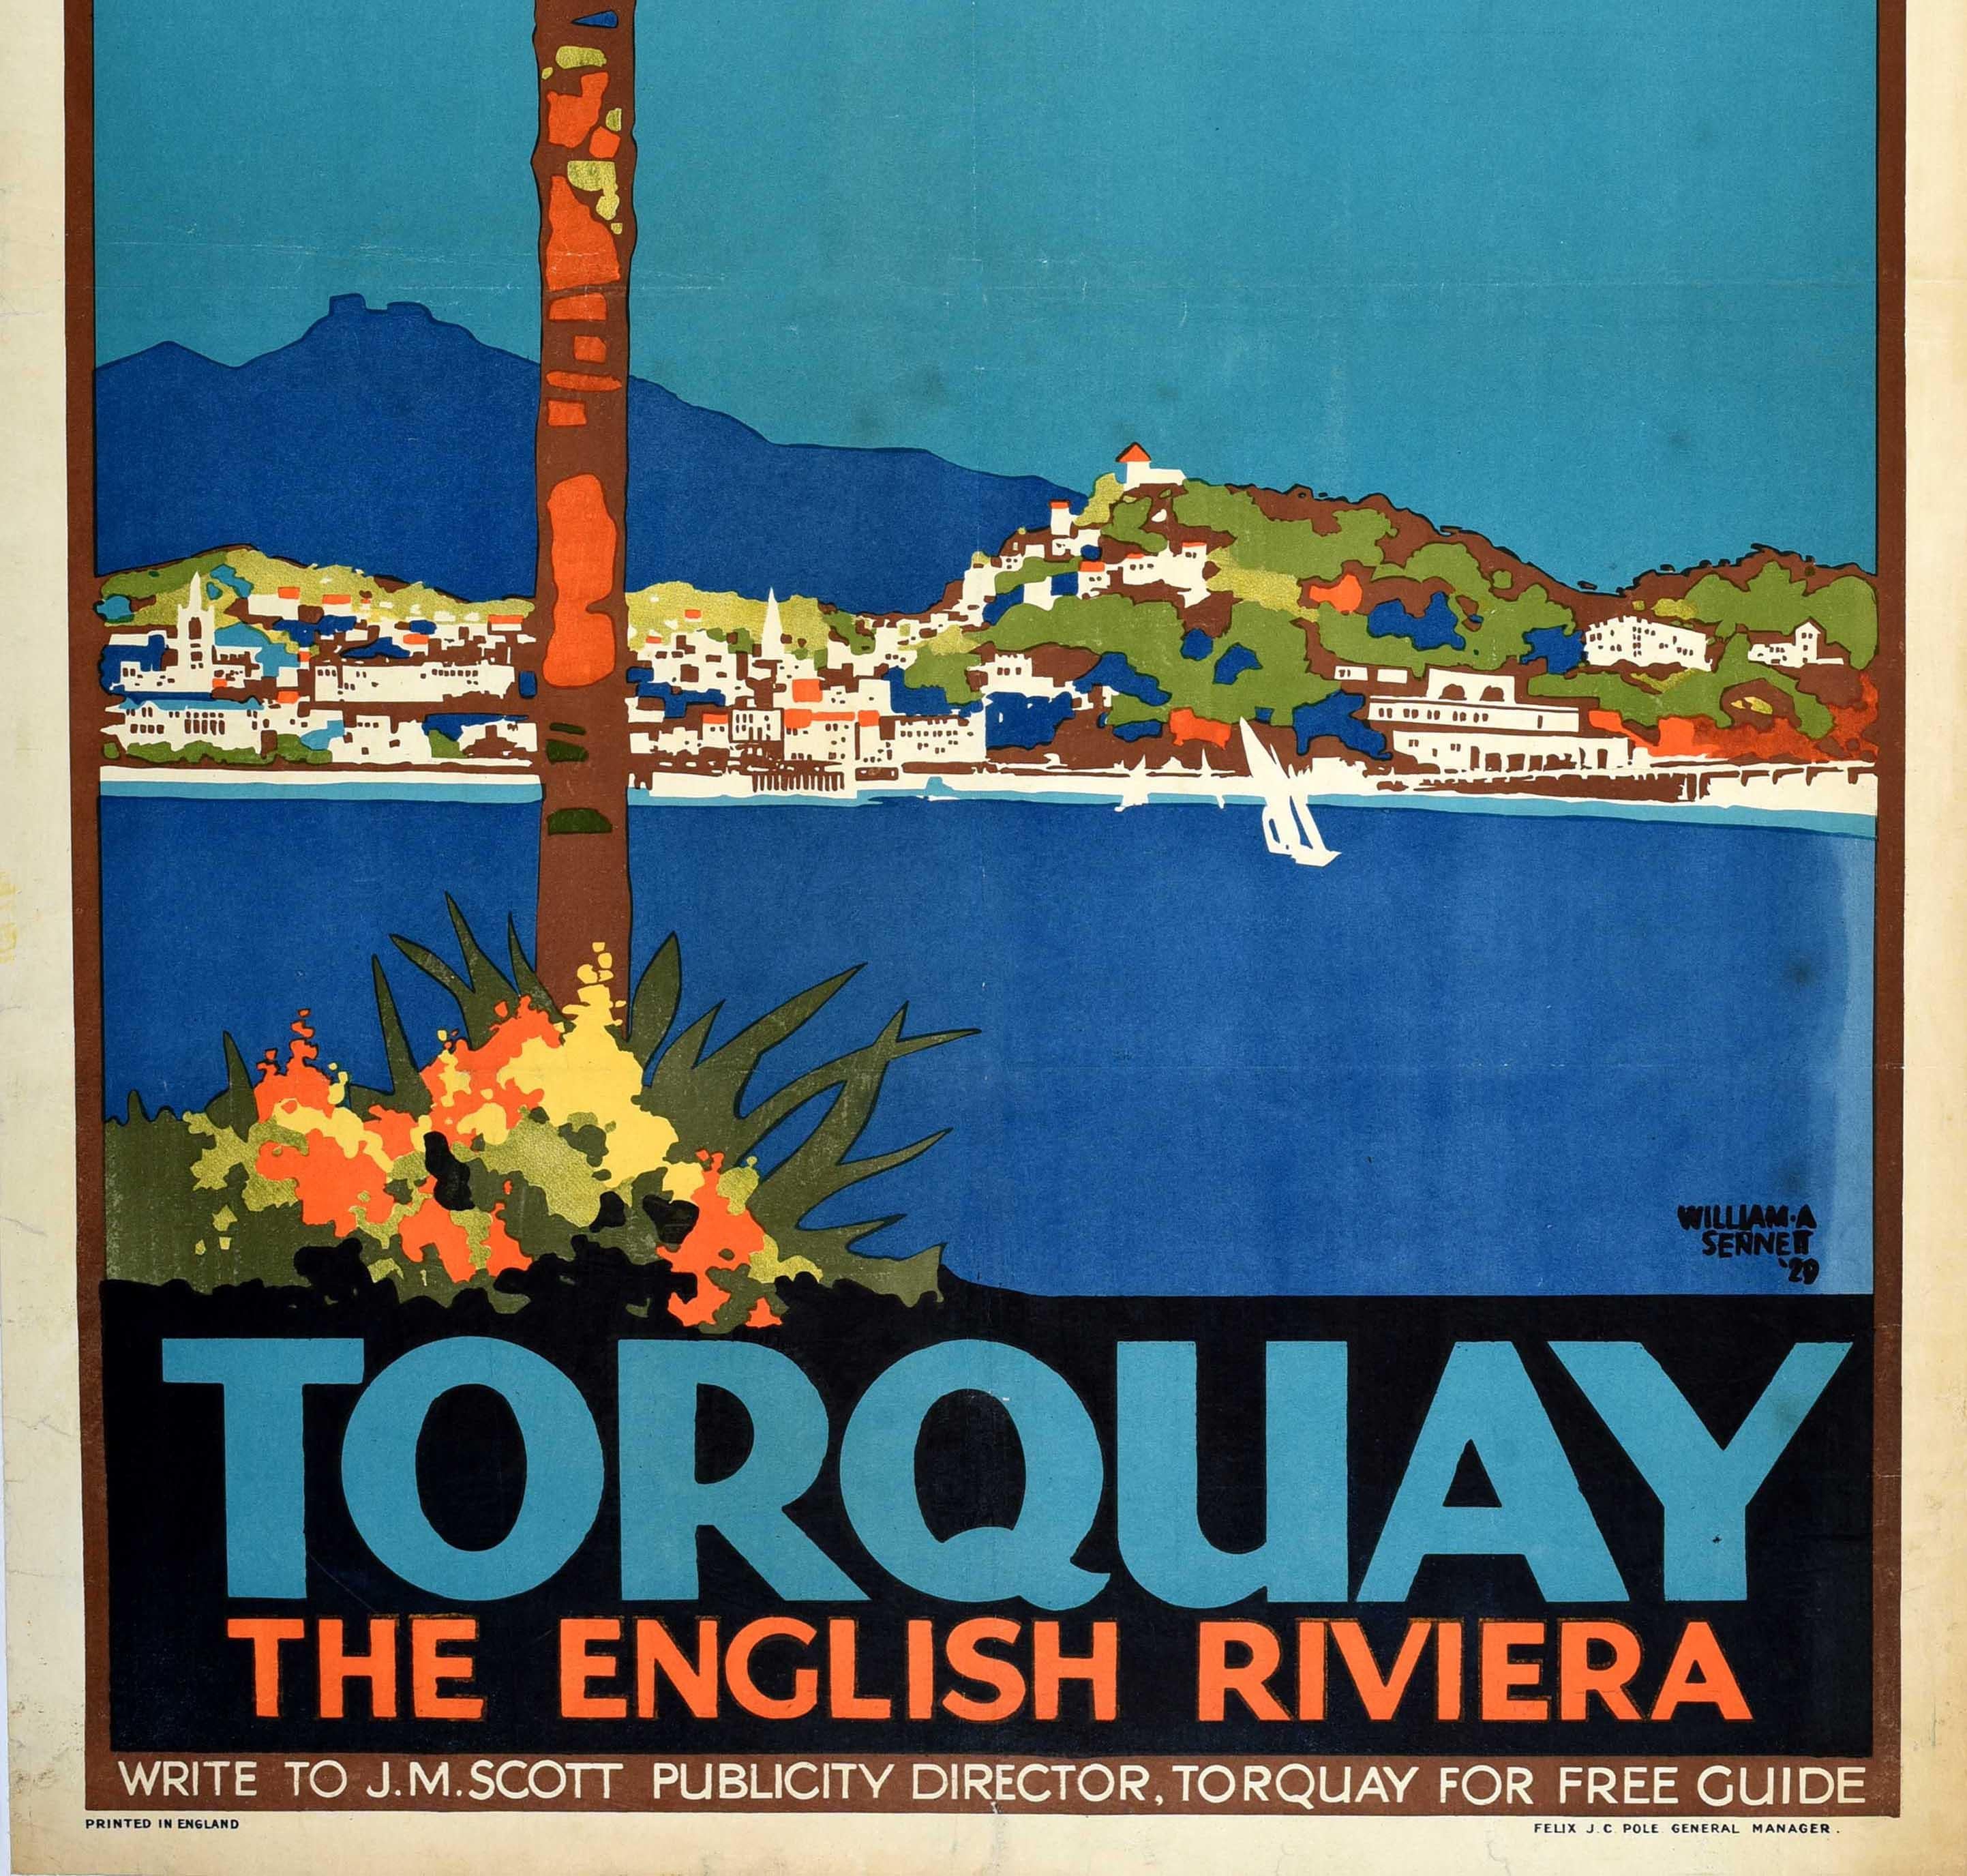 Original Vintage Great Western Railway Plakat für Torquay The English Riviera mit einem atemberaubenden Art-Deco-Design zeigt einen Blick über den Hafen mit Booten entlang der Küste vor der beliebten Küstenstadt mit Hügeln gegen den blauen Himmel